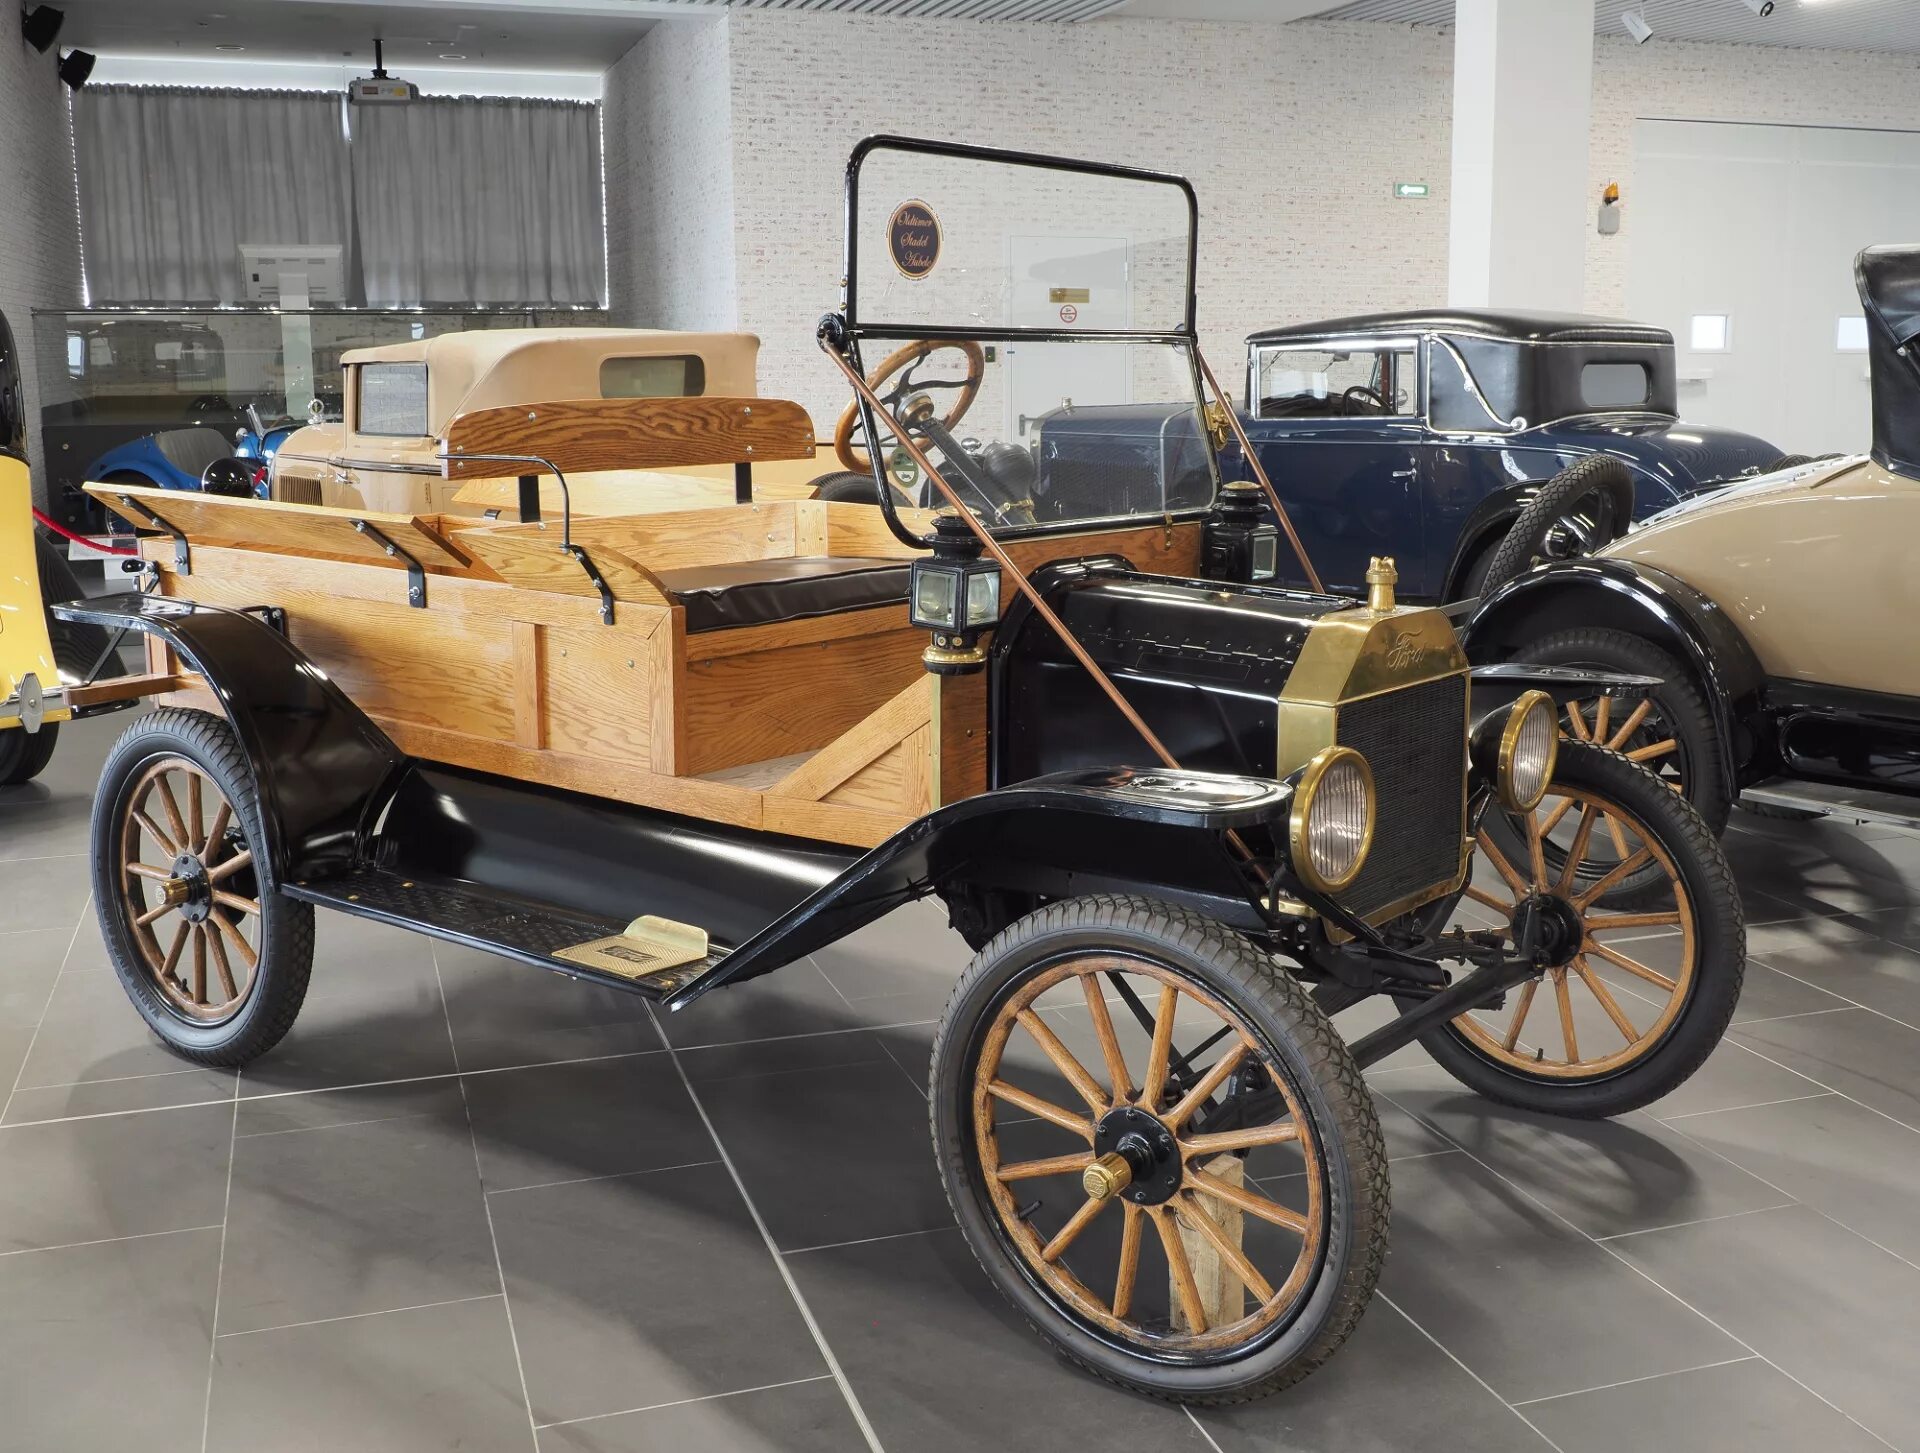 Автомобили 1 час. Машина Гейльмана 19 век. Первый автомобиль 19 века. Форд конца 19 века. Автомобили конца 19 века.